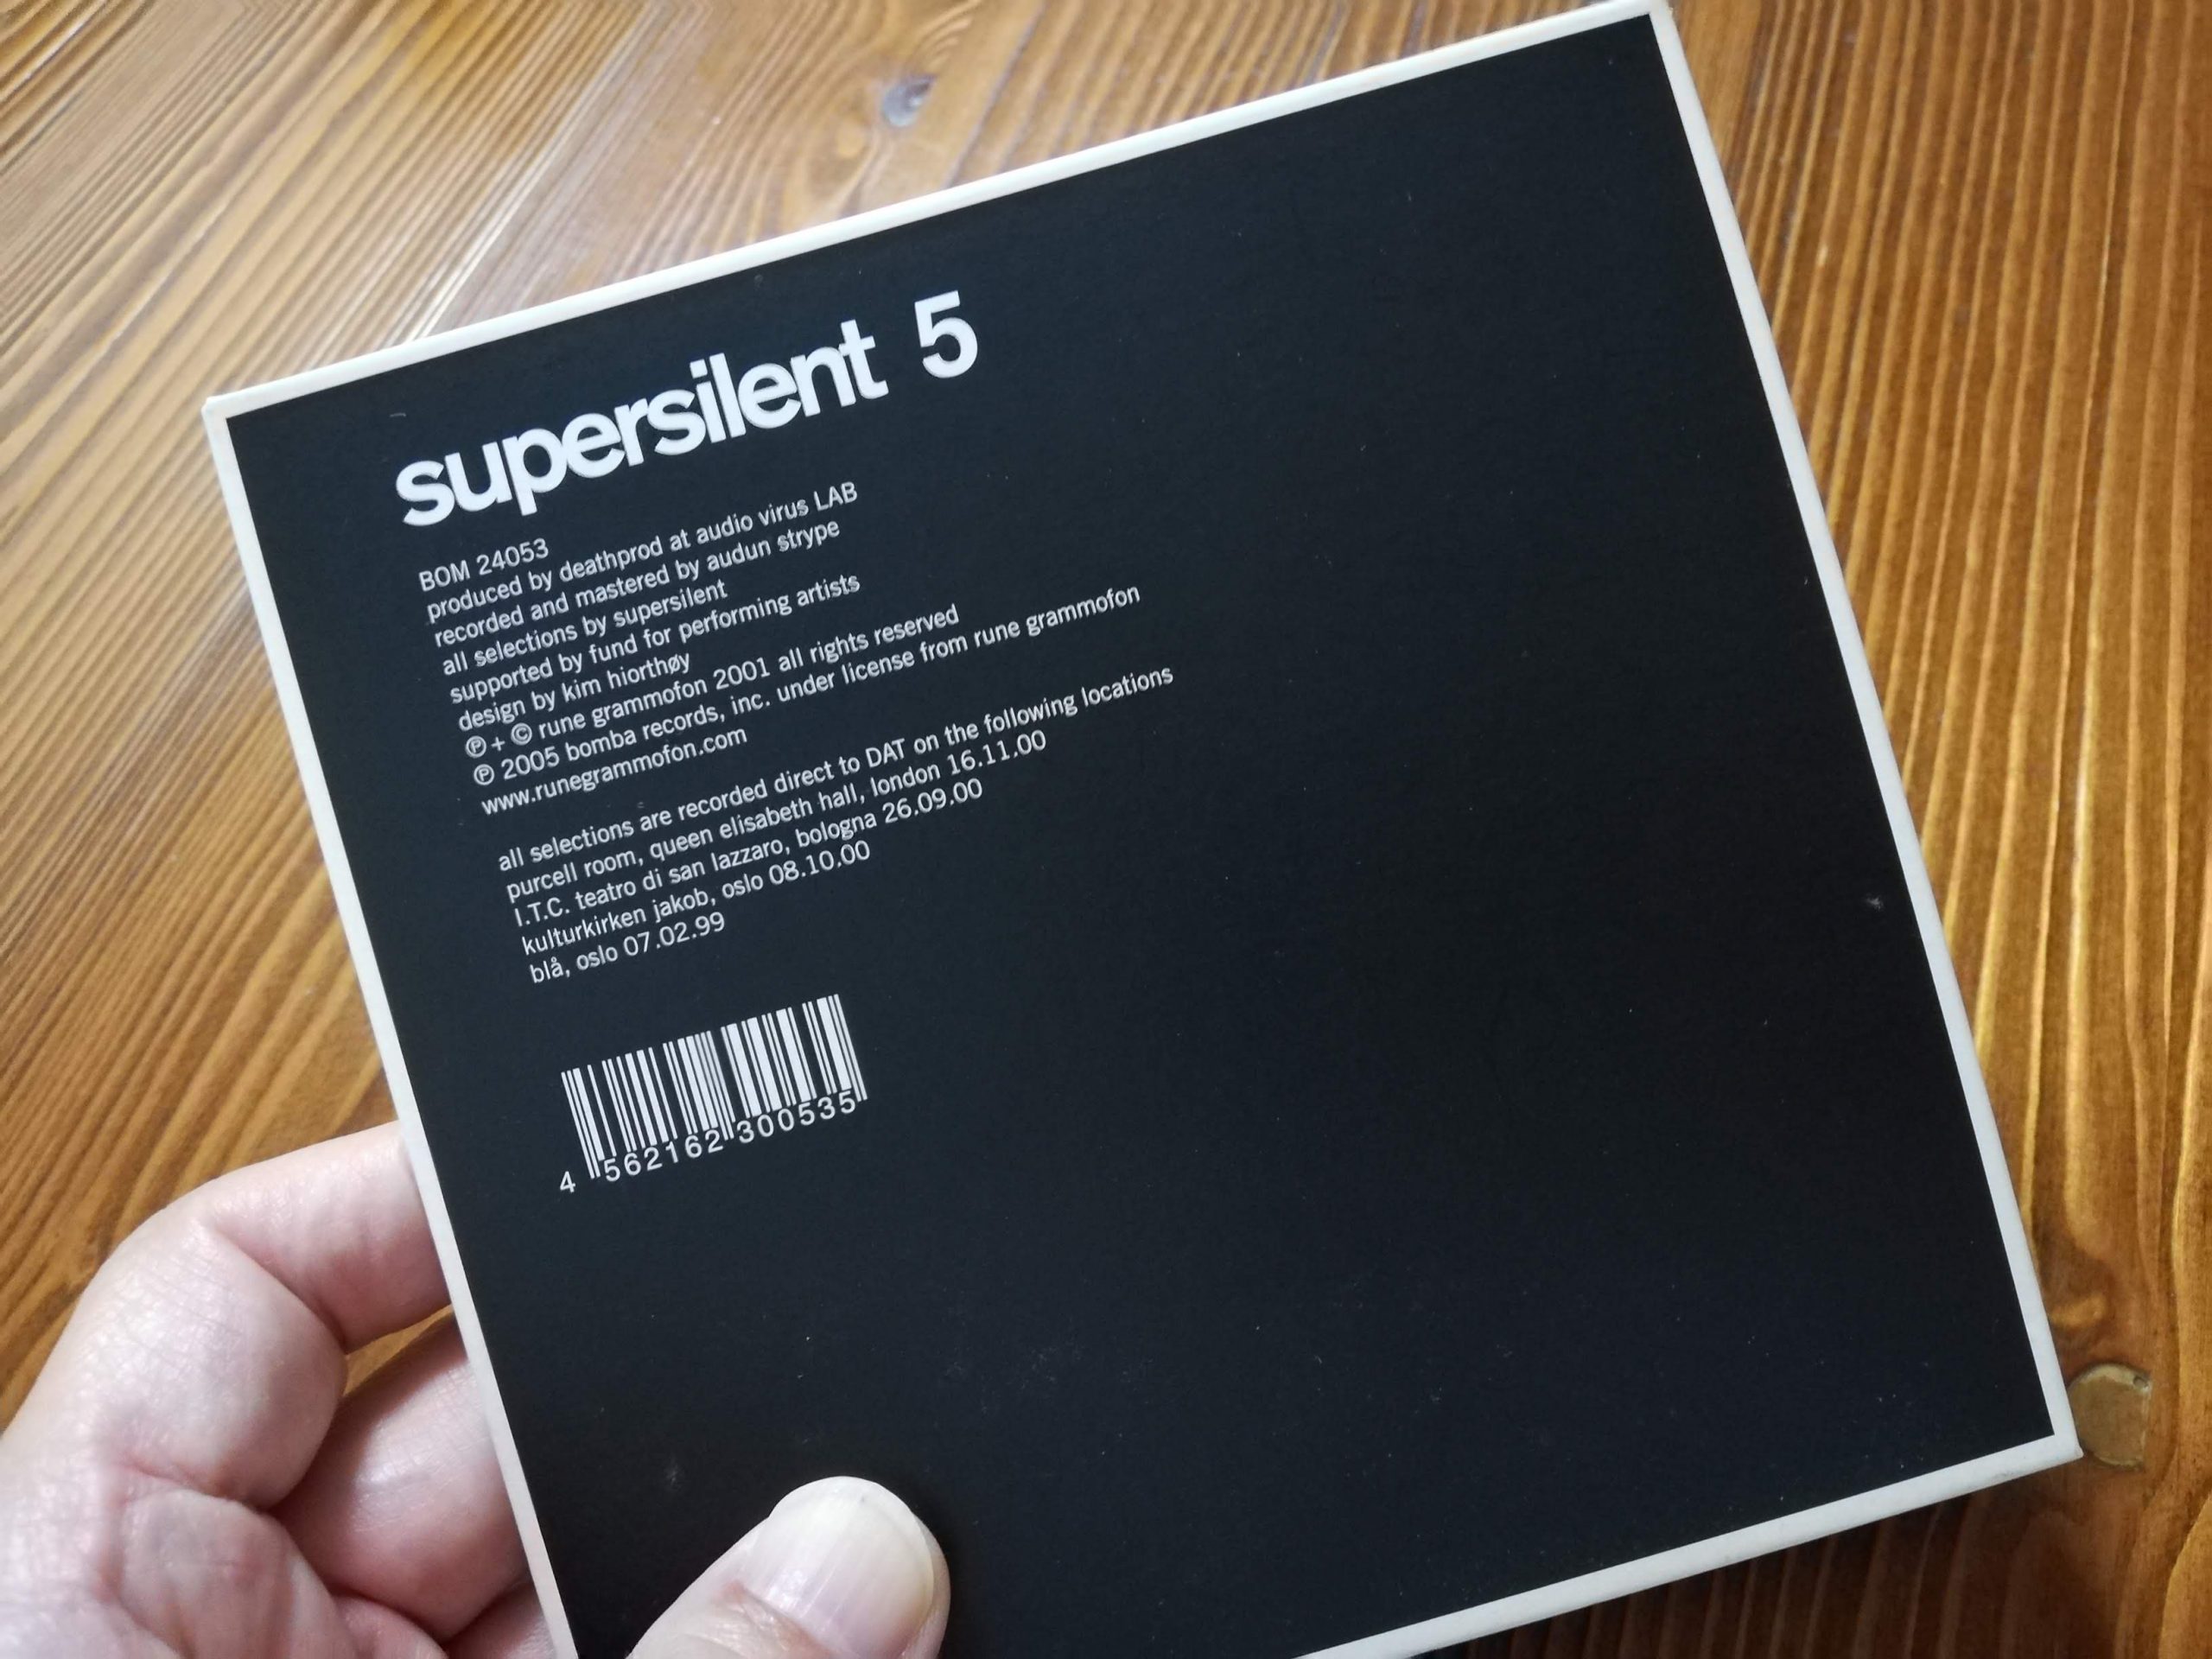 棚からひとつつかみ#1 “Supersilent 5”